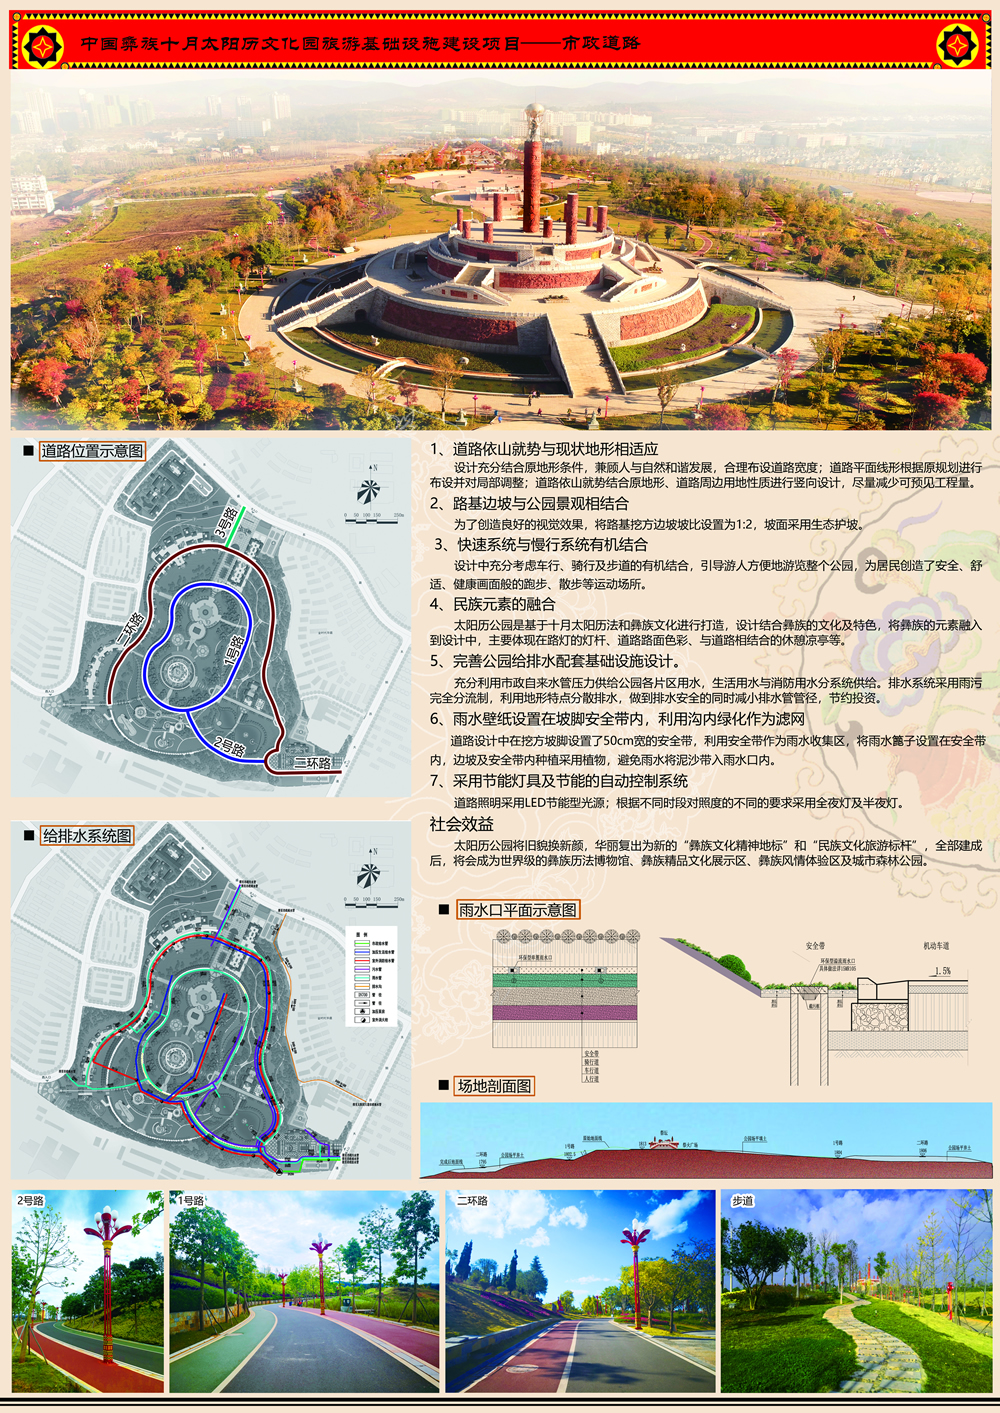 中国彝族十月太阳历公园旅游基础设施建设项目.jpg